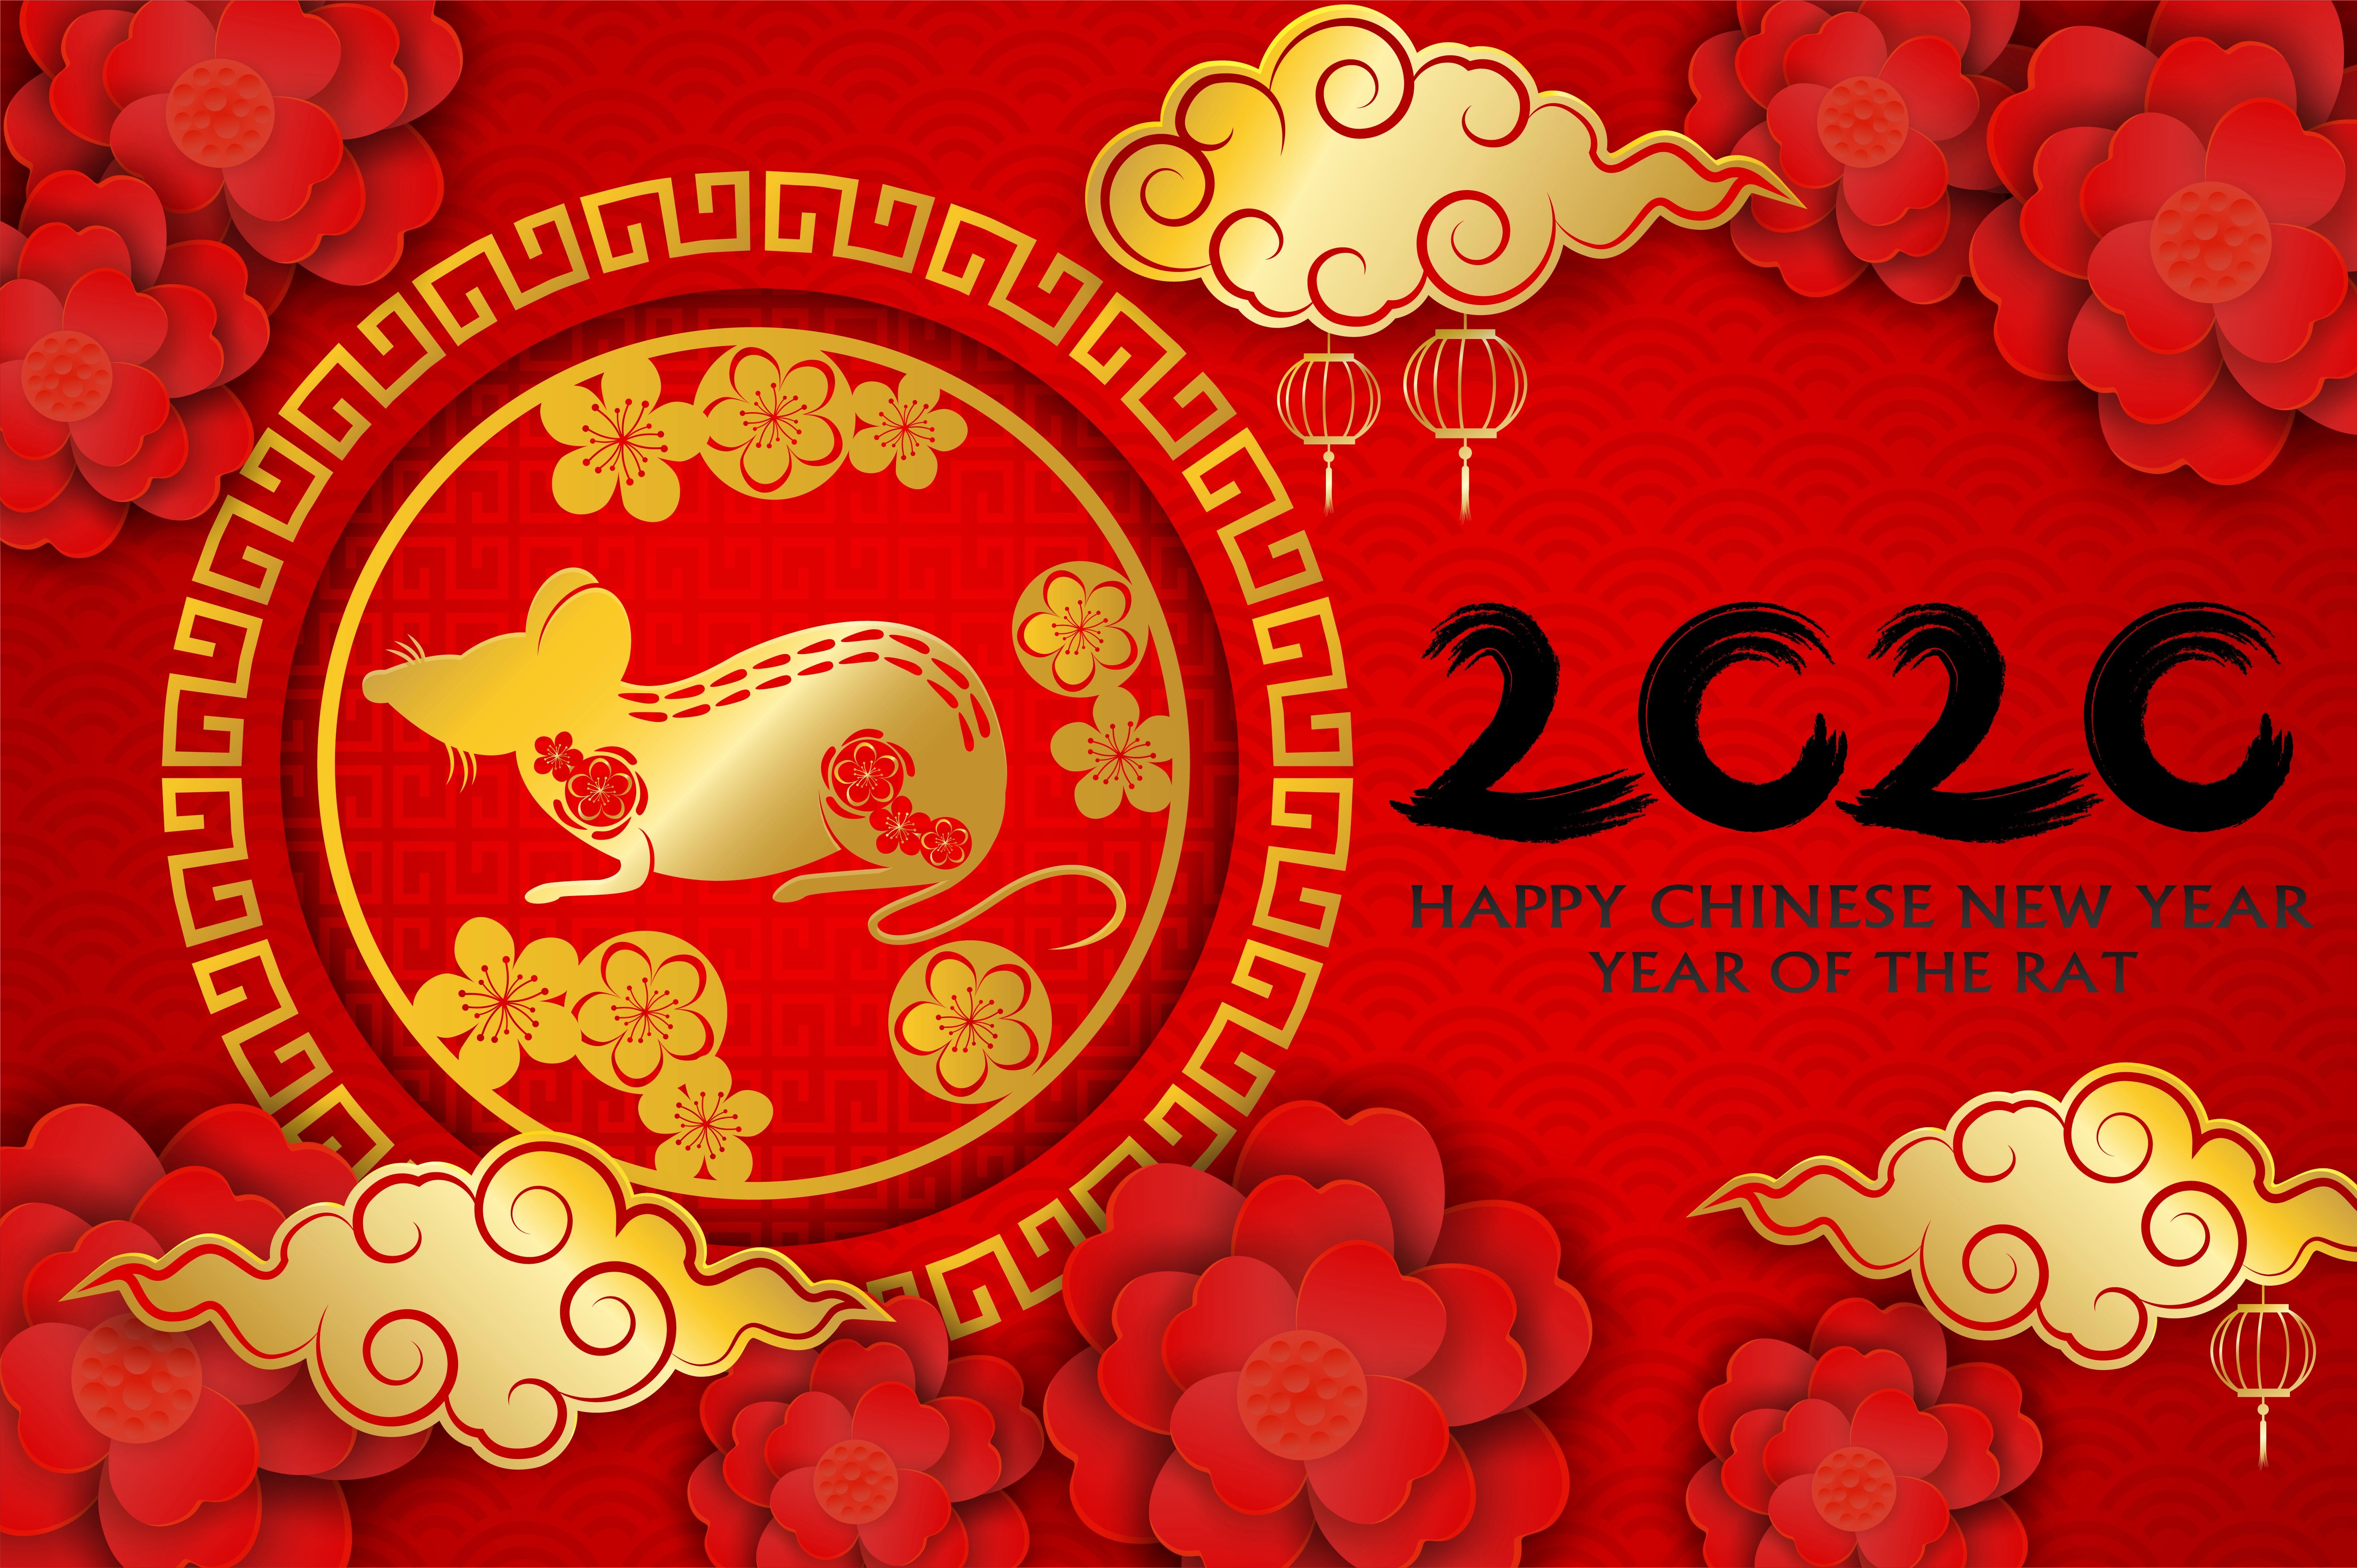 1532940 скачать обои праздничные, китайский новый год, с новым годом, крыса - заставки и картинки бесплатно